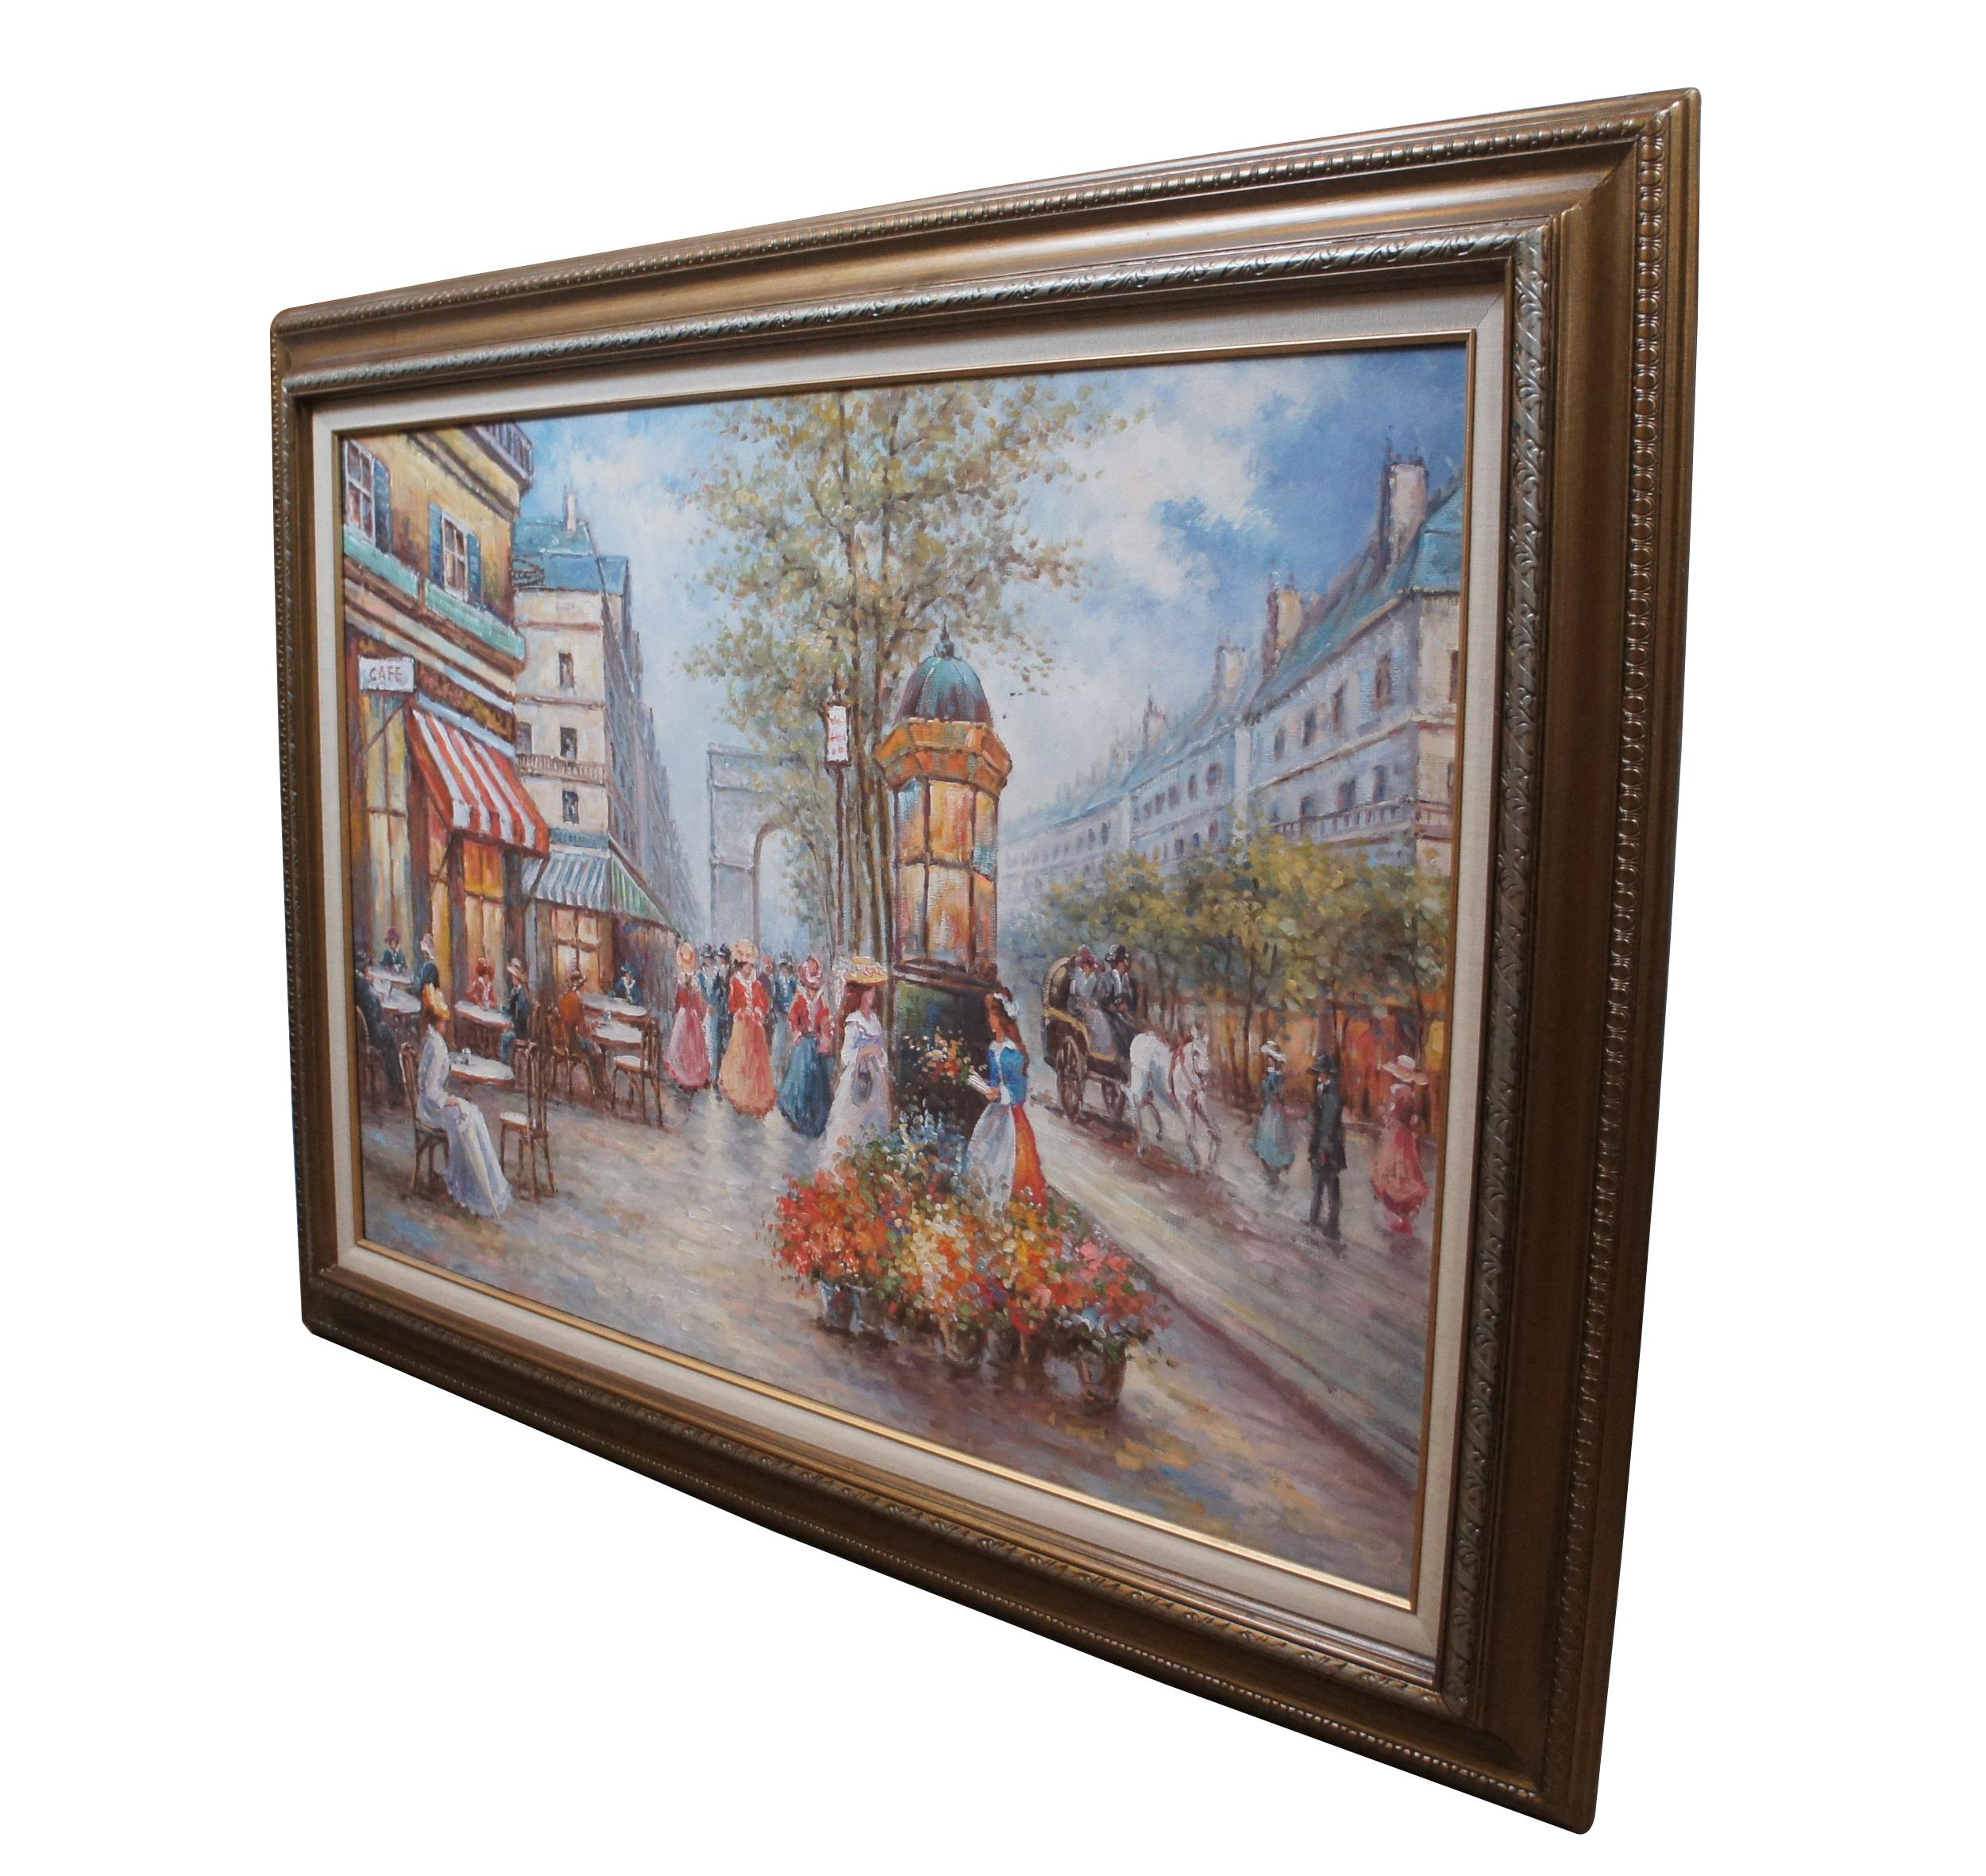 Vintage huile sur toile peinture impressionniste montrant un paysage urbain / scène de rue d'une rue bordée de cafés à Paris, en regardant l'Arc de Triomphe rempli de personnages en robe victorienne. Cadre biseauté doré avec détails sculptés